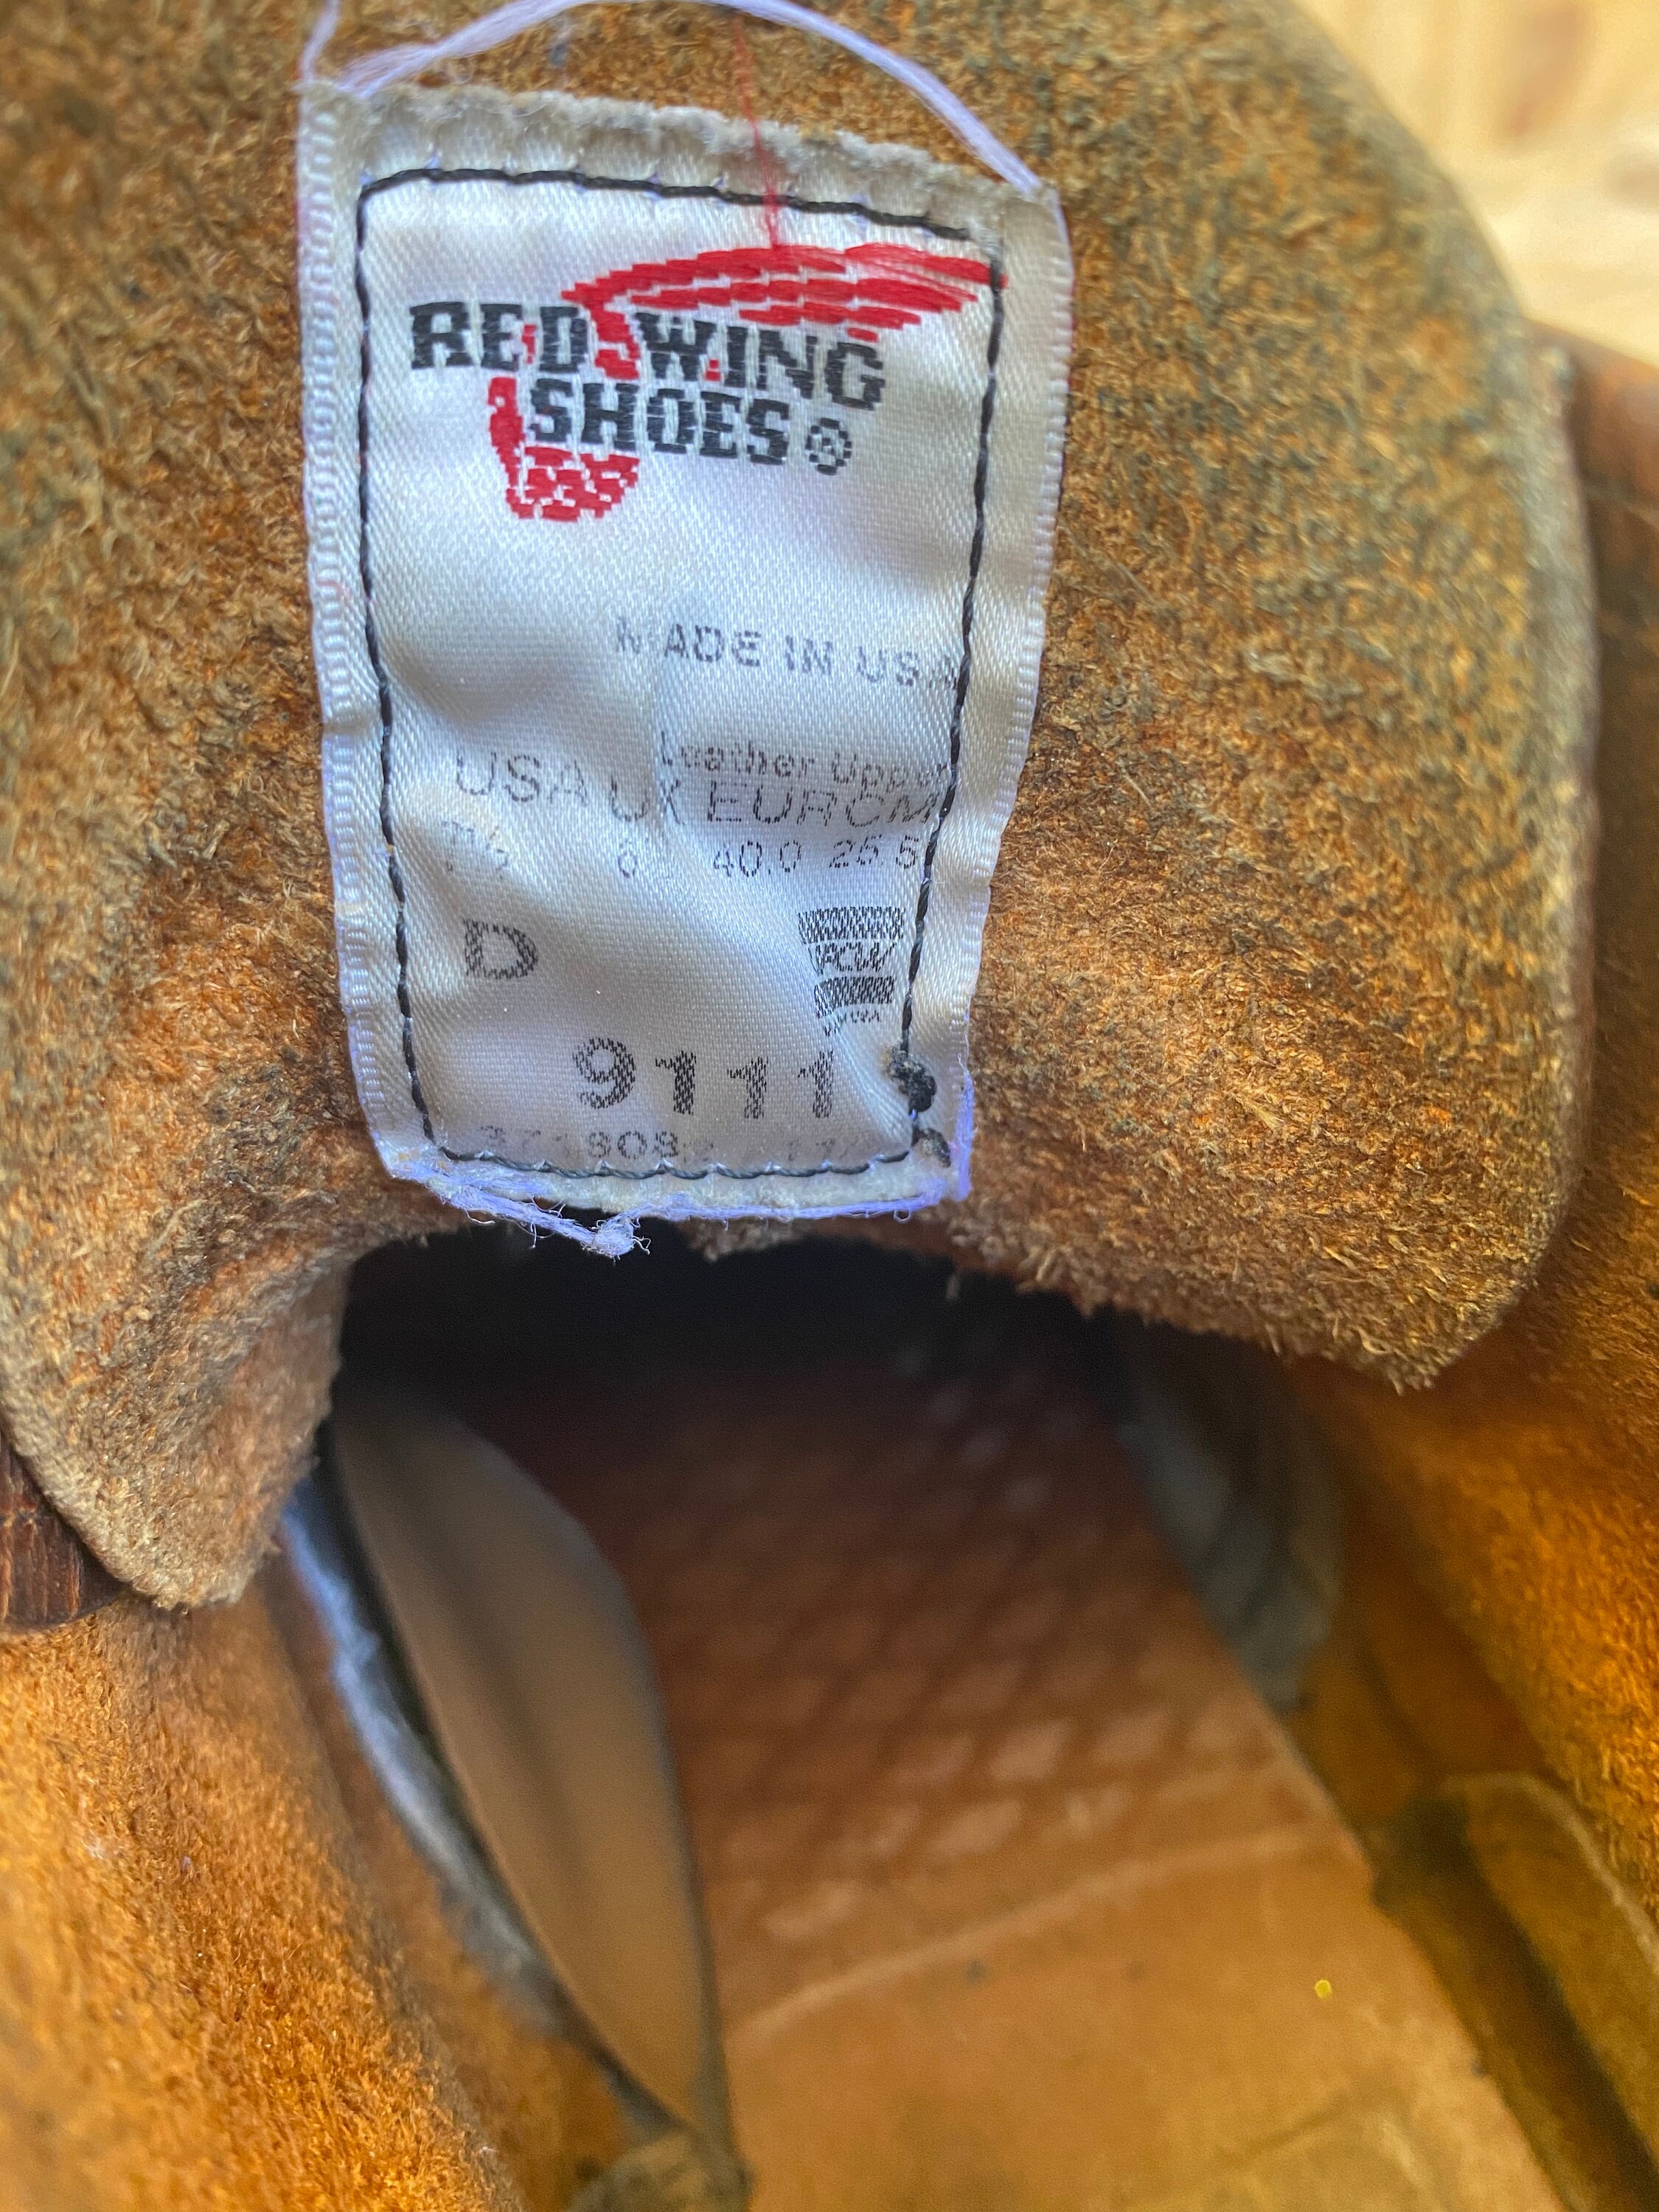 trabajo de cuero hecho en USA Tamaño 8 D Zapatos Zapatos para hombre Botas Botas de trabajo y estilo militar Red Wing Round Toe #9111 Botas de cobre rugoso y resistente 